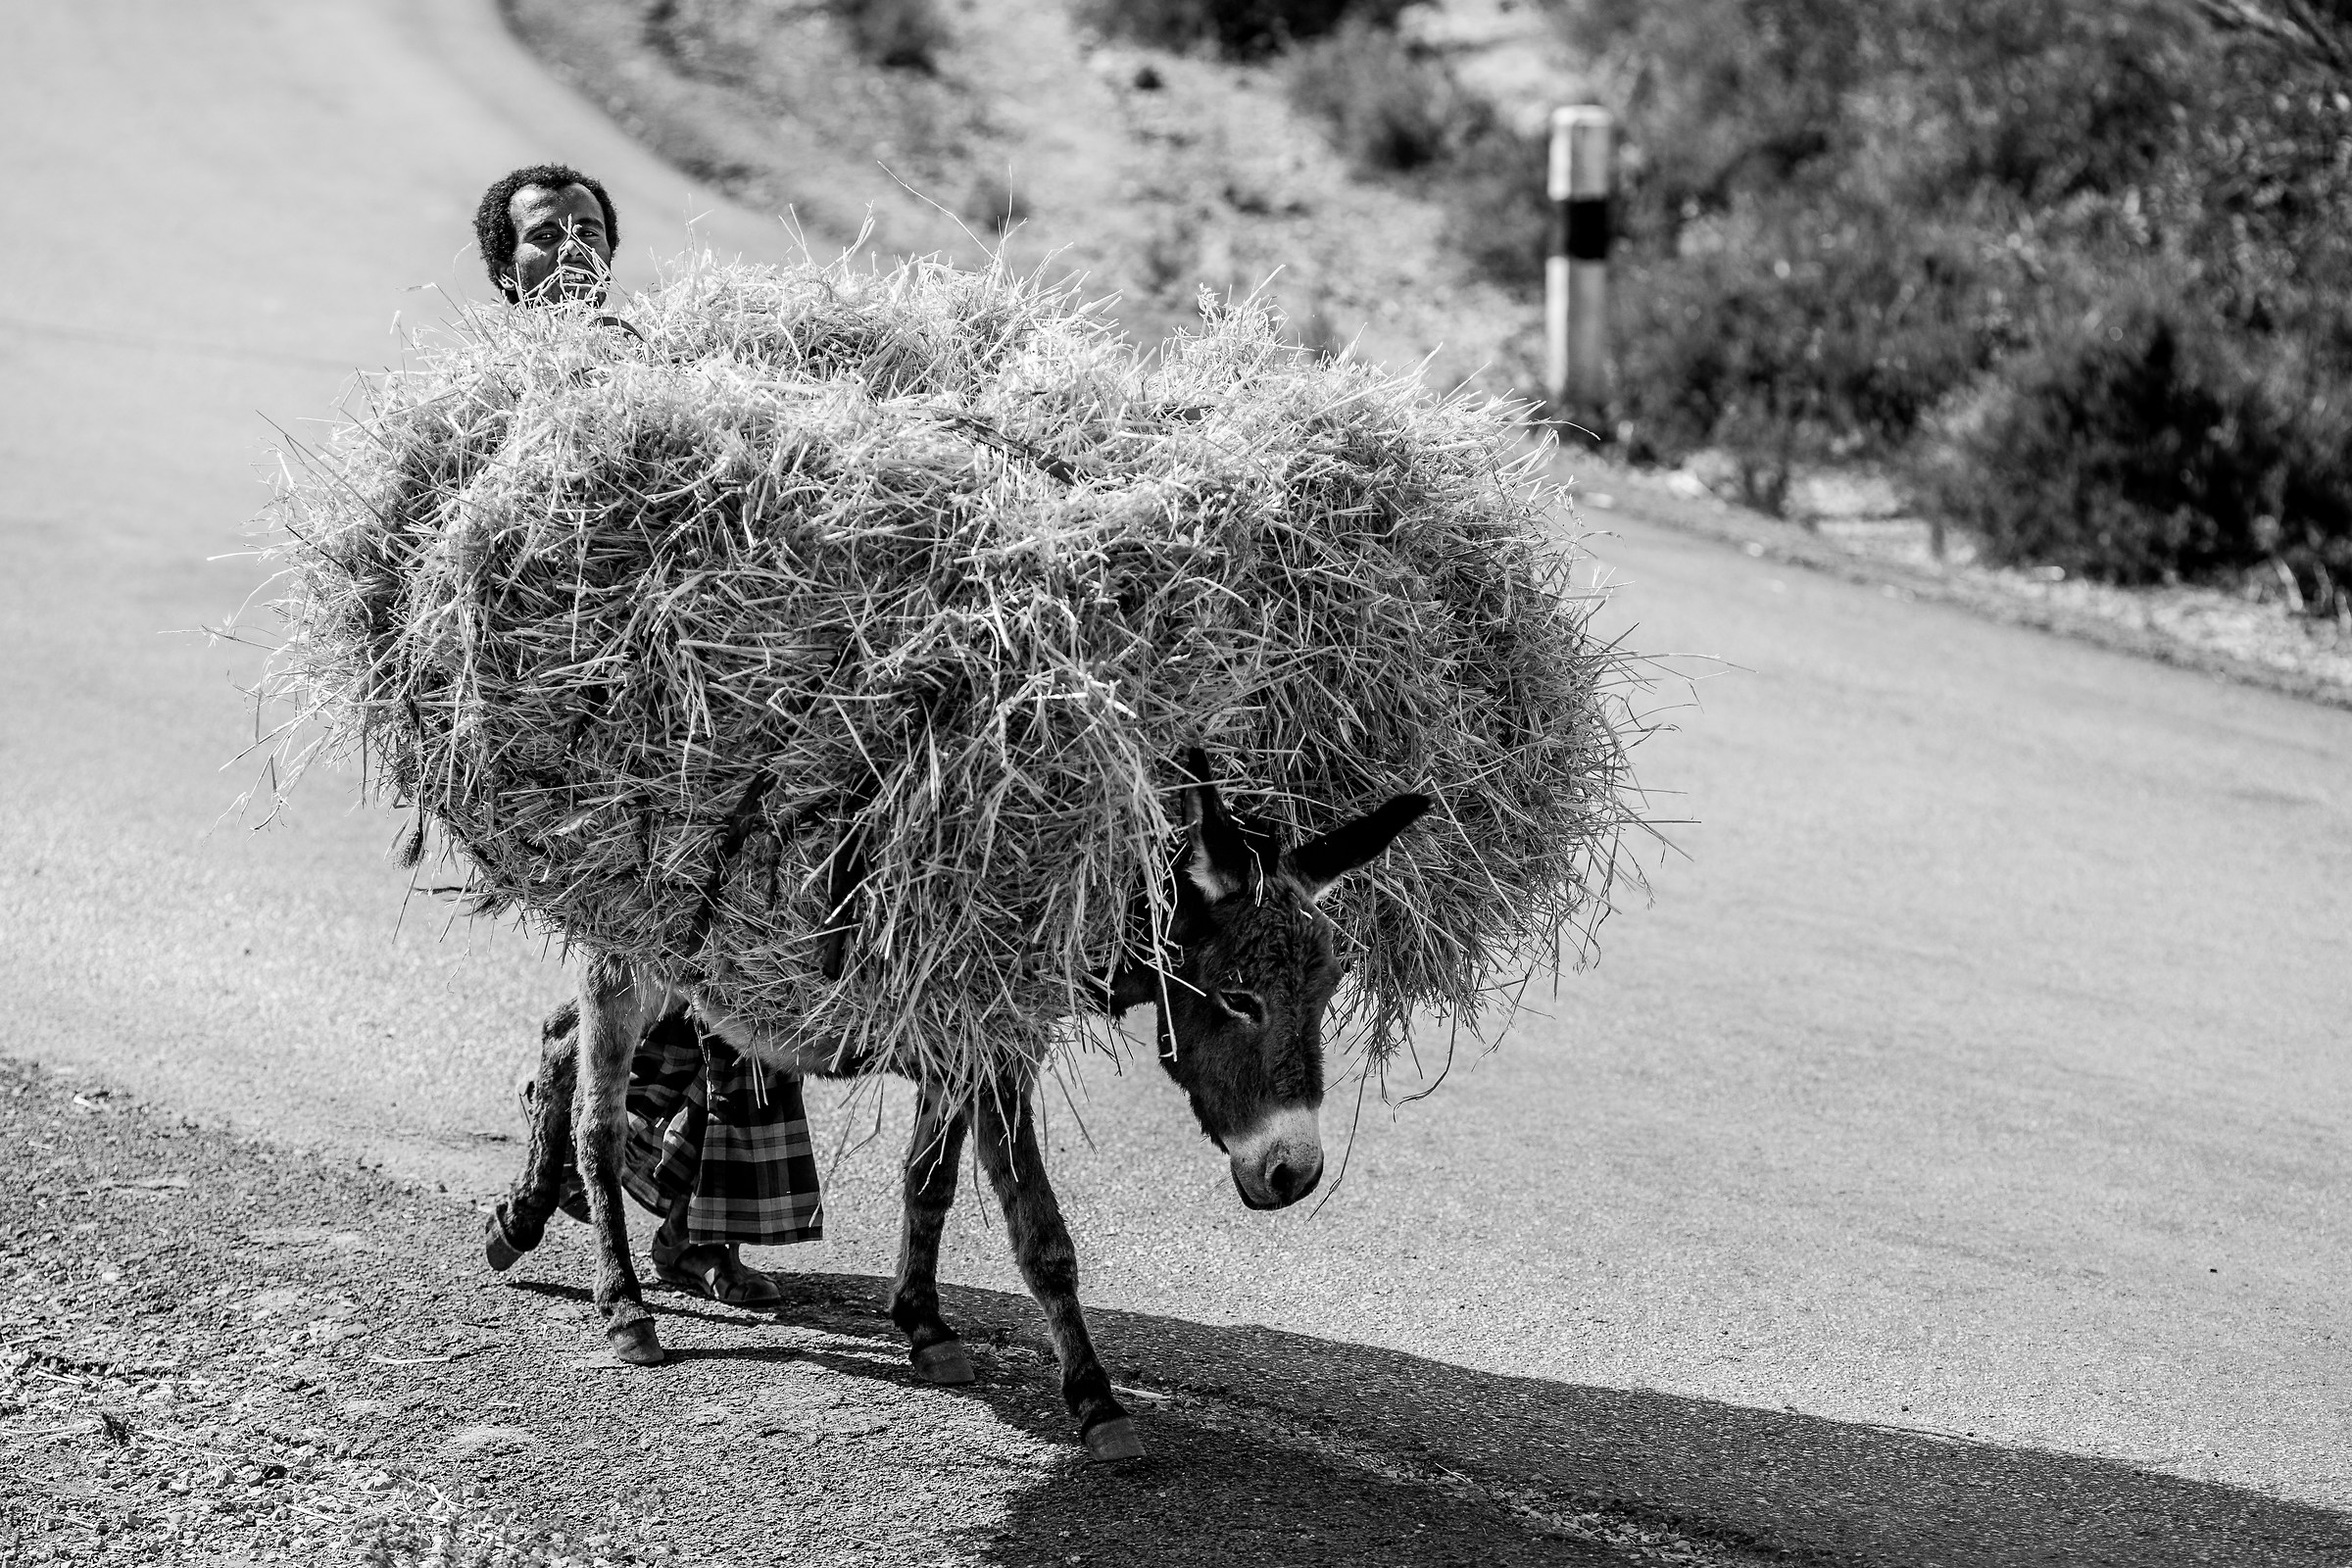 Etiopia on the road...